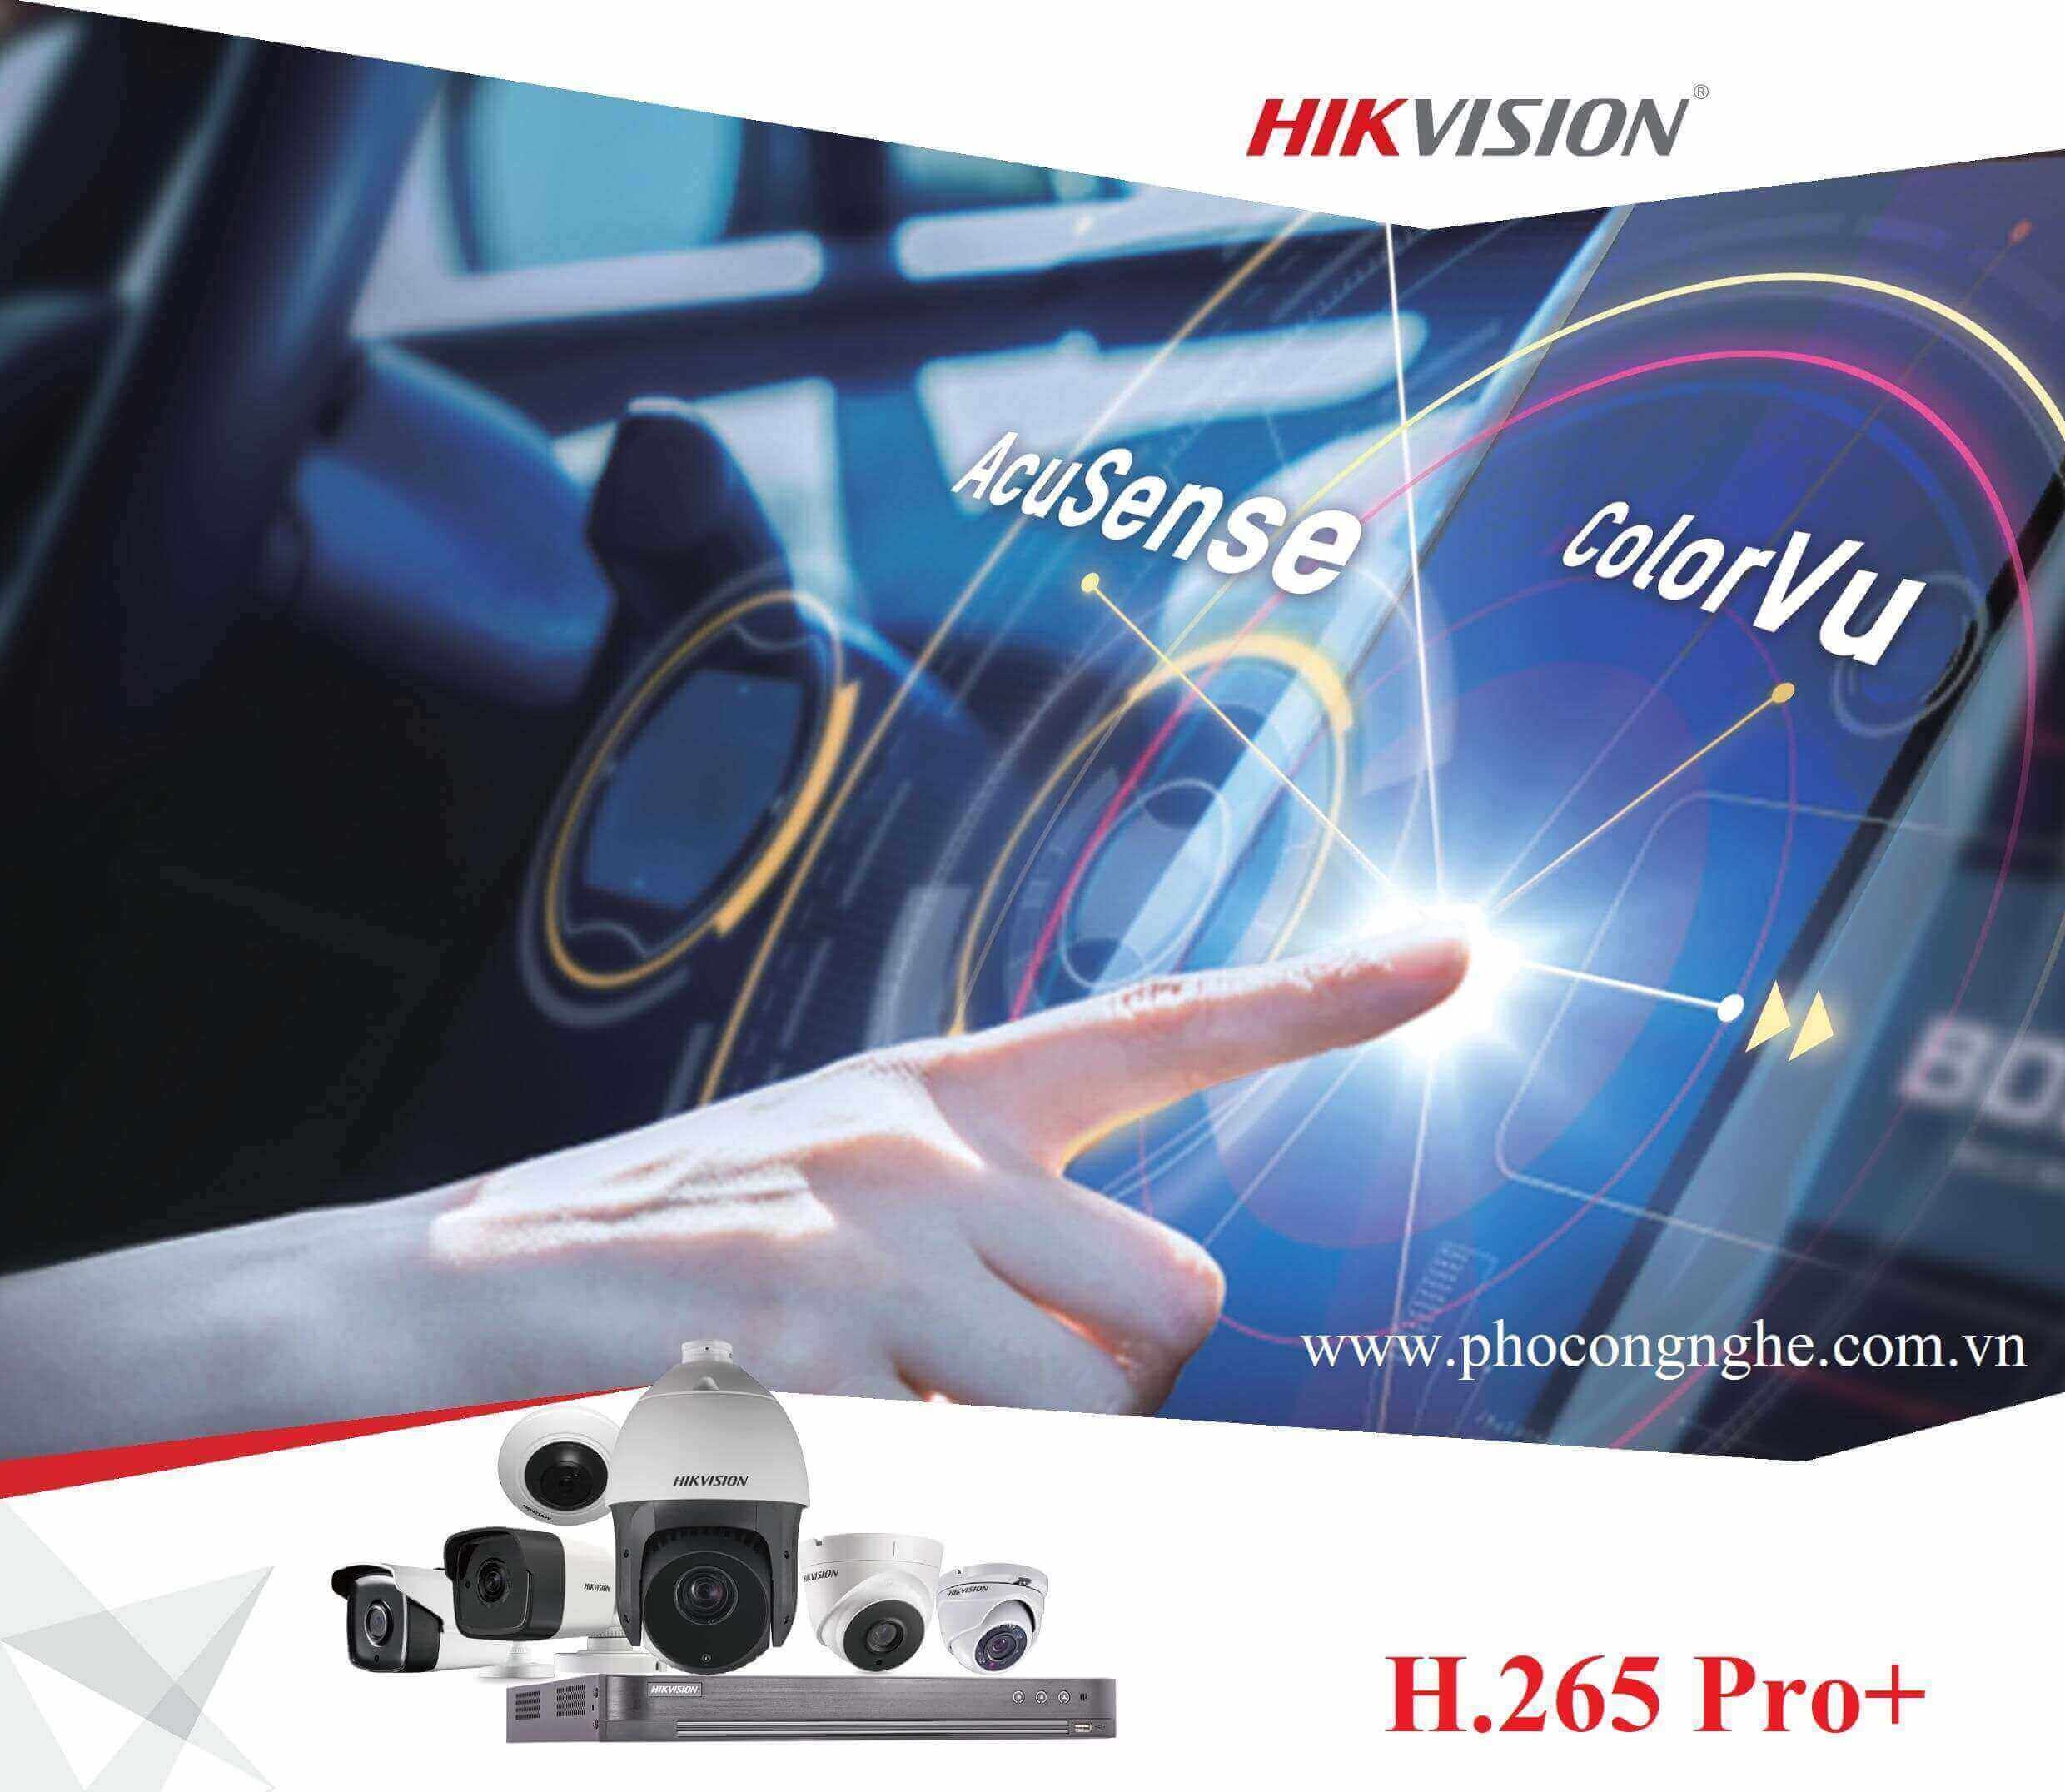 Giới thiệu chuẩn nén hình H.265 Pro+